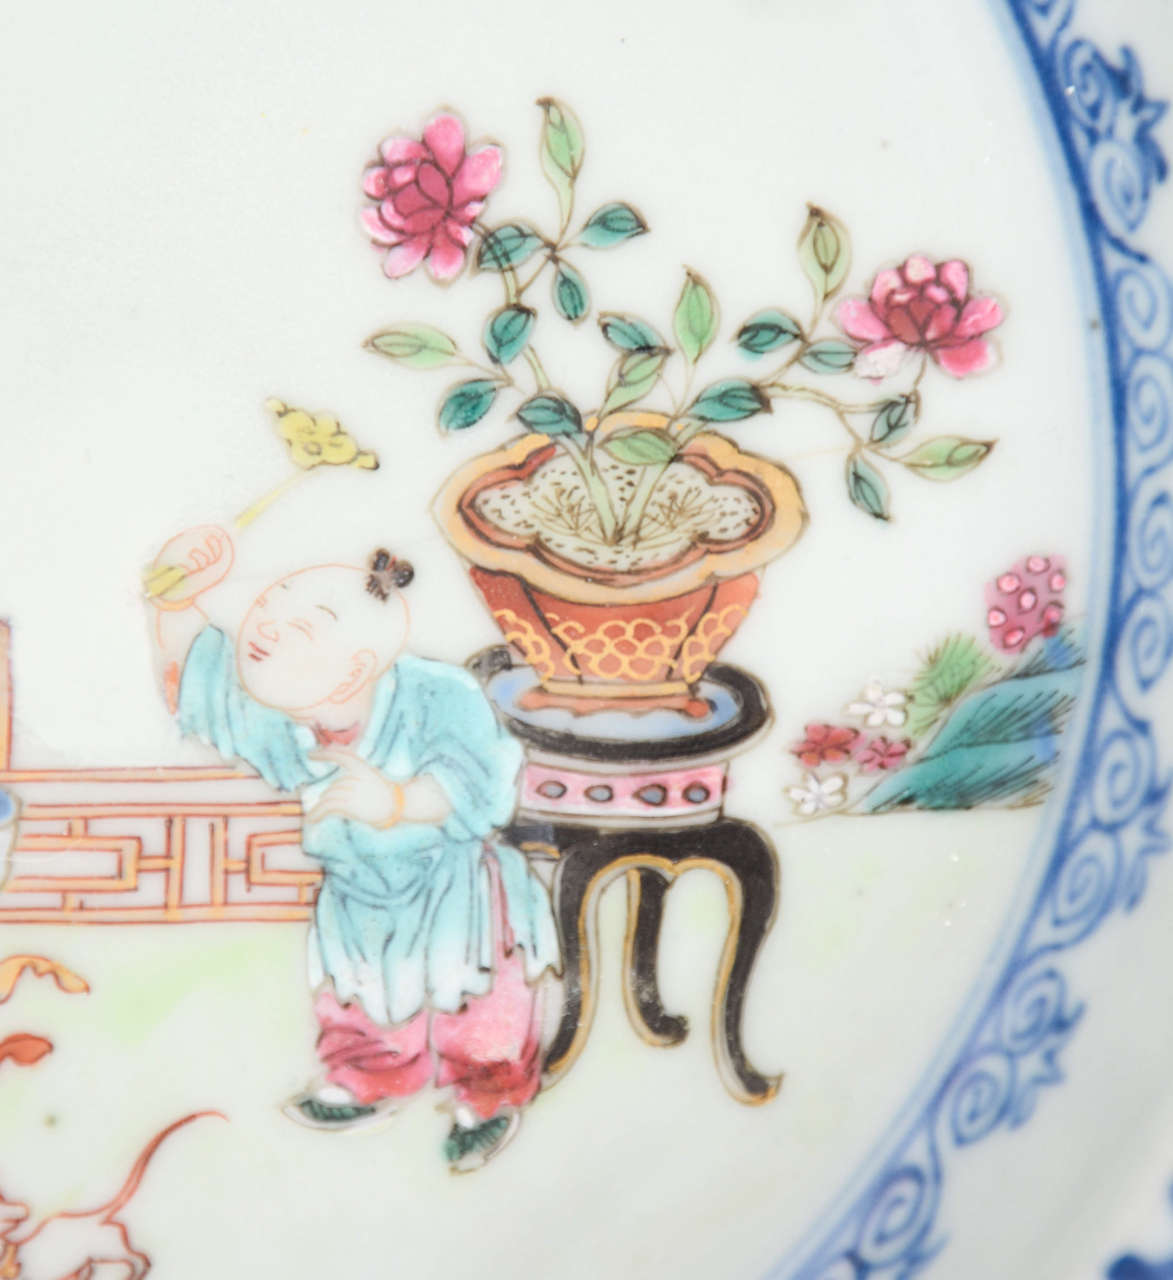 17th Century Superb, QING, KANGXI, Chinese, Porcelain, Plate or Bowl, circa 1700